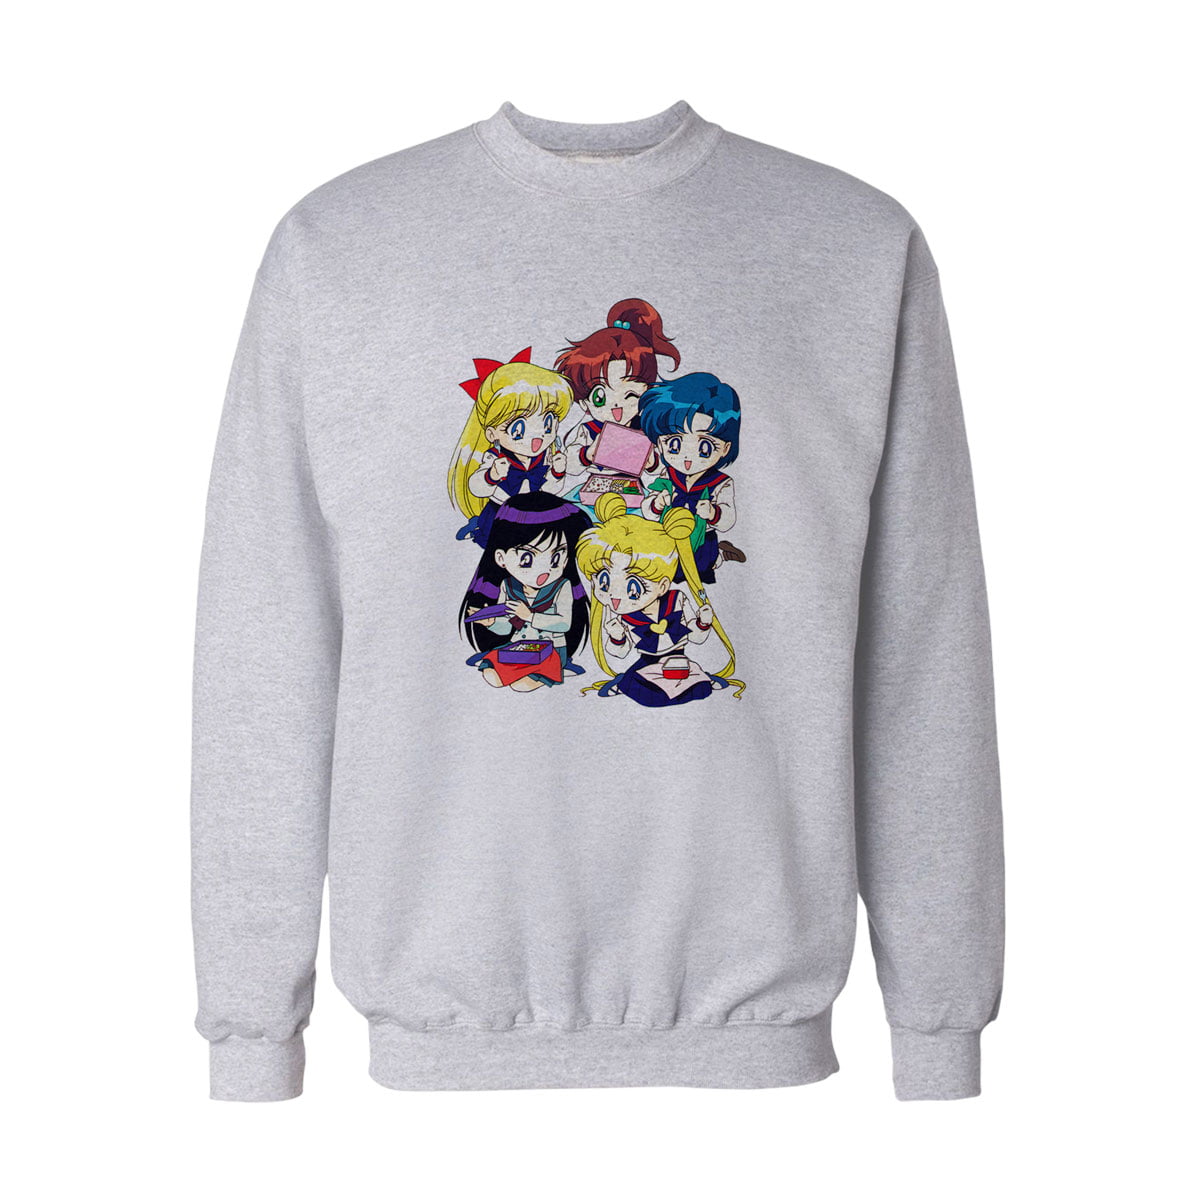 Sailor moon all girl sweatshirt b - sailor moon ay savaşçısı top 5 sweatshirt - figurex